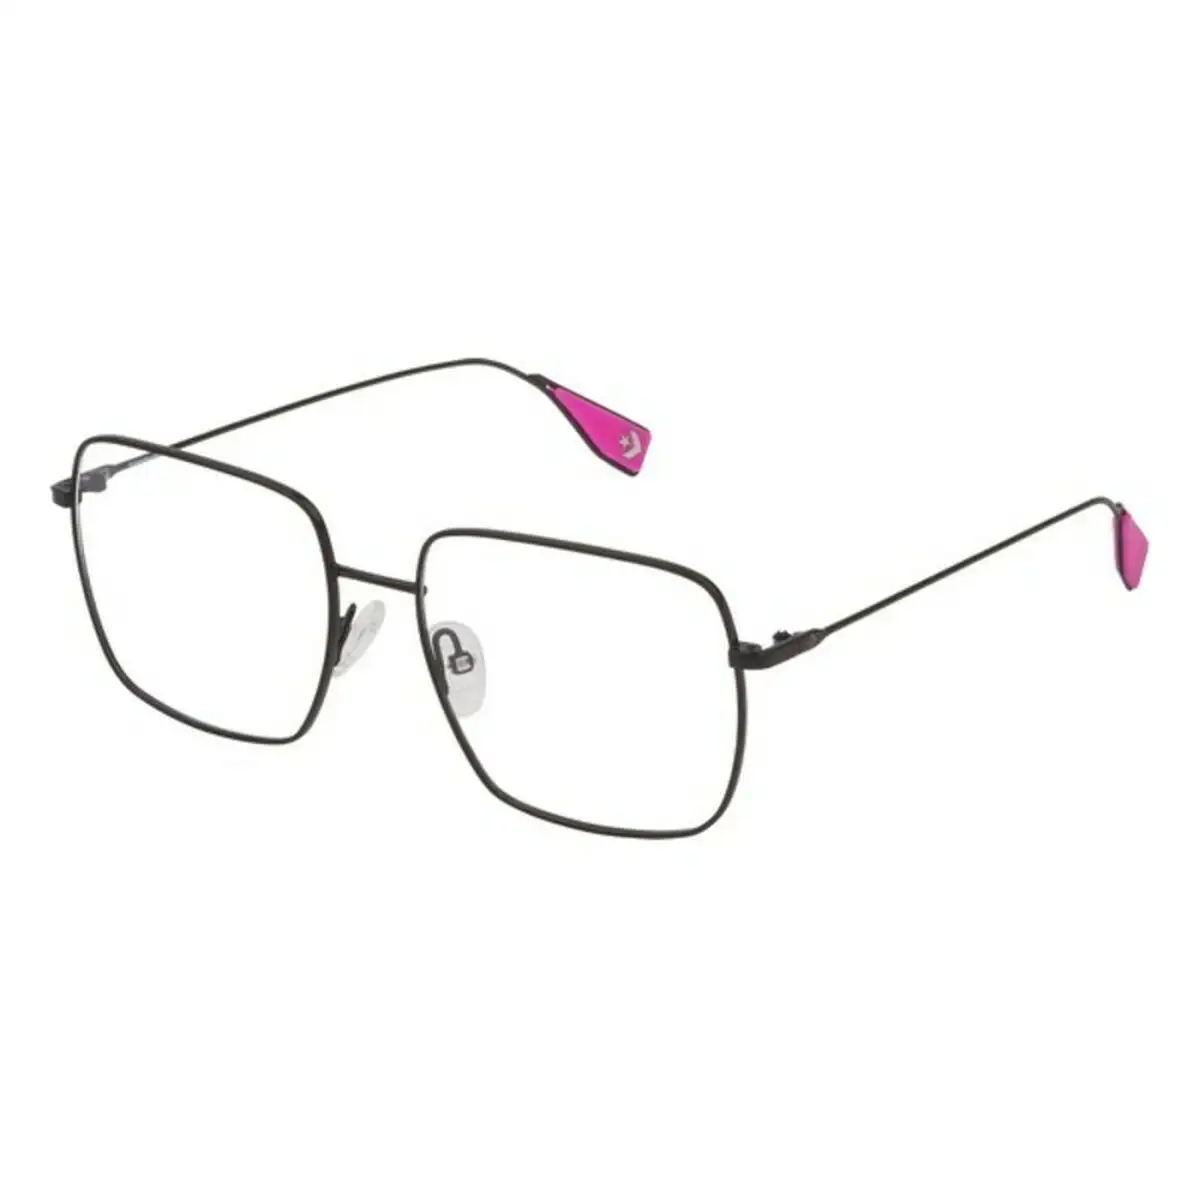 Monture de lunettes femme converse vco127530531 noir o 53 mm _1014. DIAYTAR SENEGAL - Votre Passage vers l'Exceptionnel. Explorez notre boutique en ligne, où chaque produit est choisi avec soin pour offrir une expérience de shopping inoubliable.